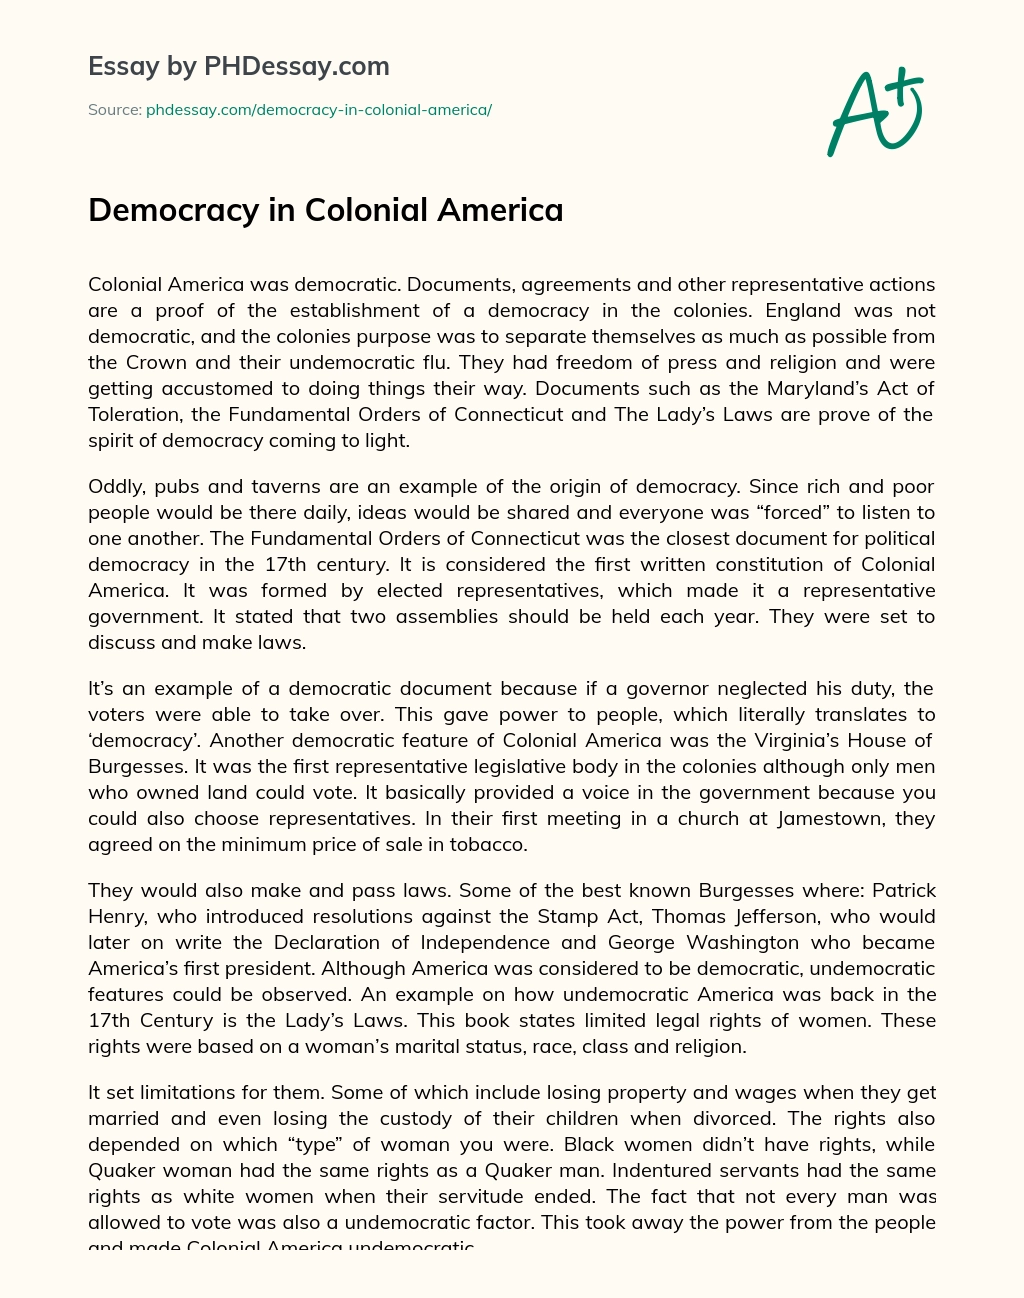 Democracy in Colonial America essay